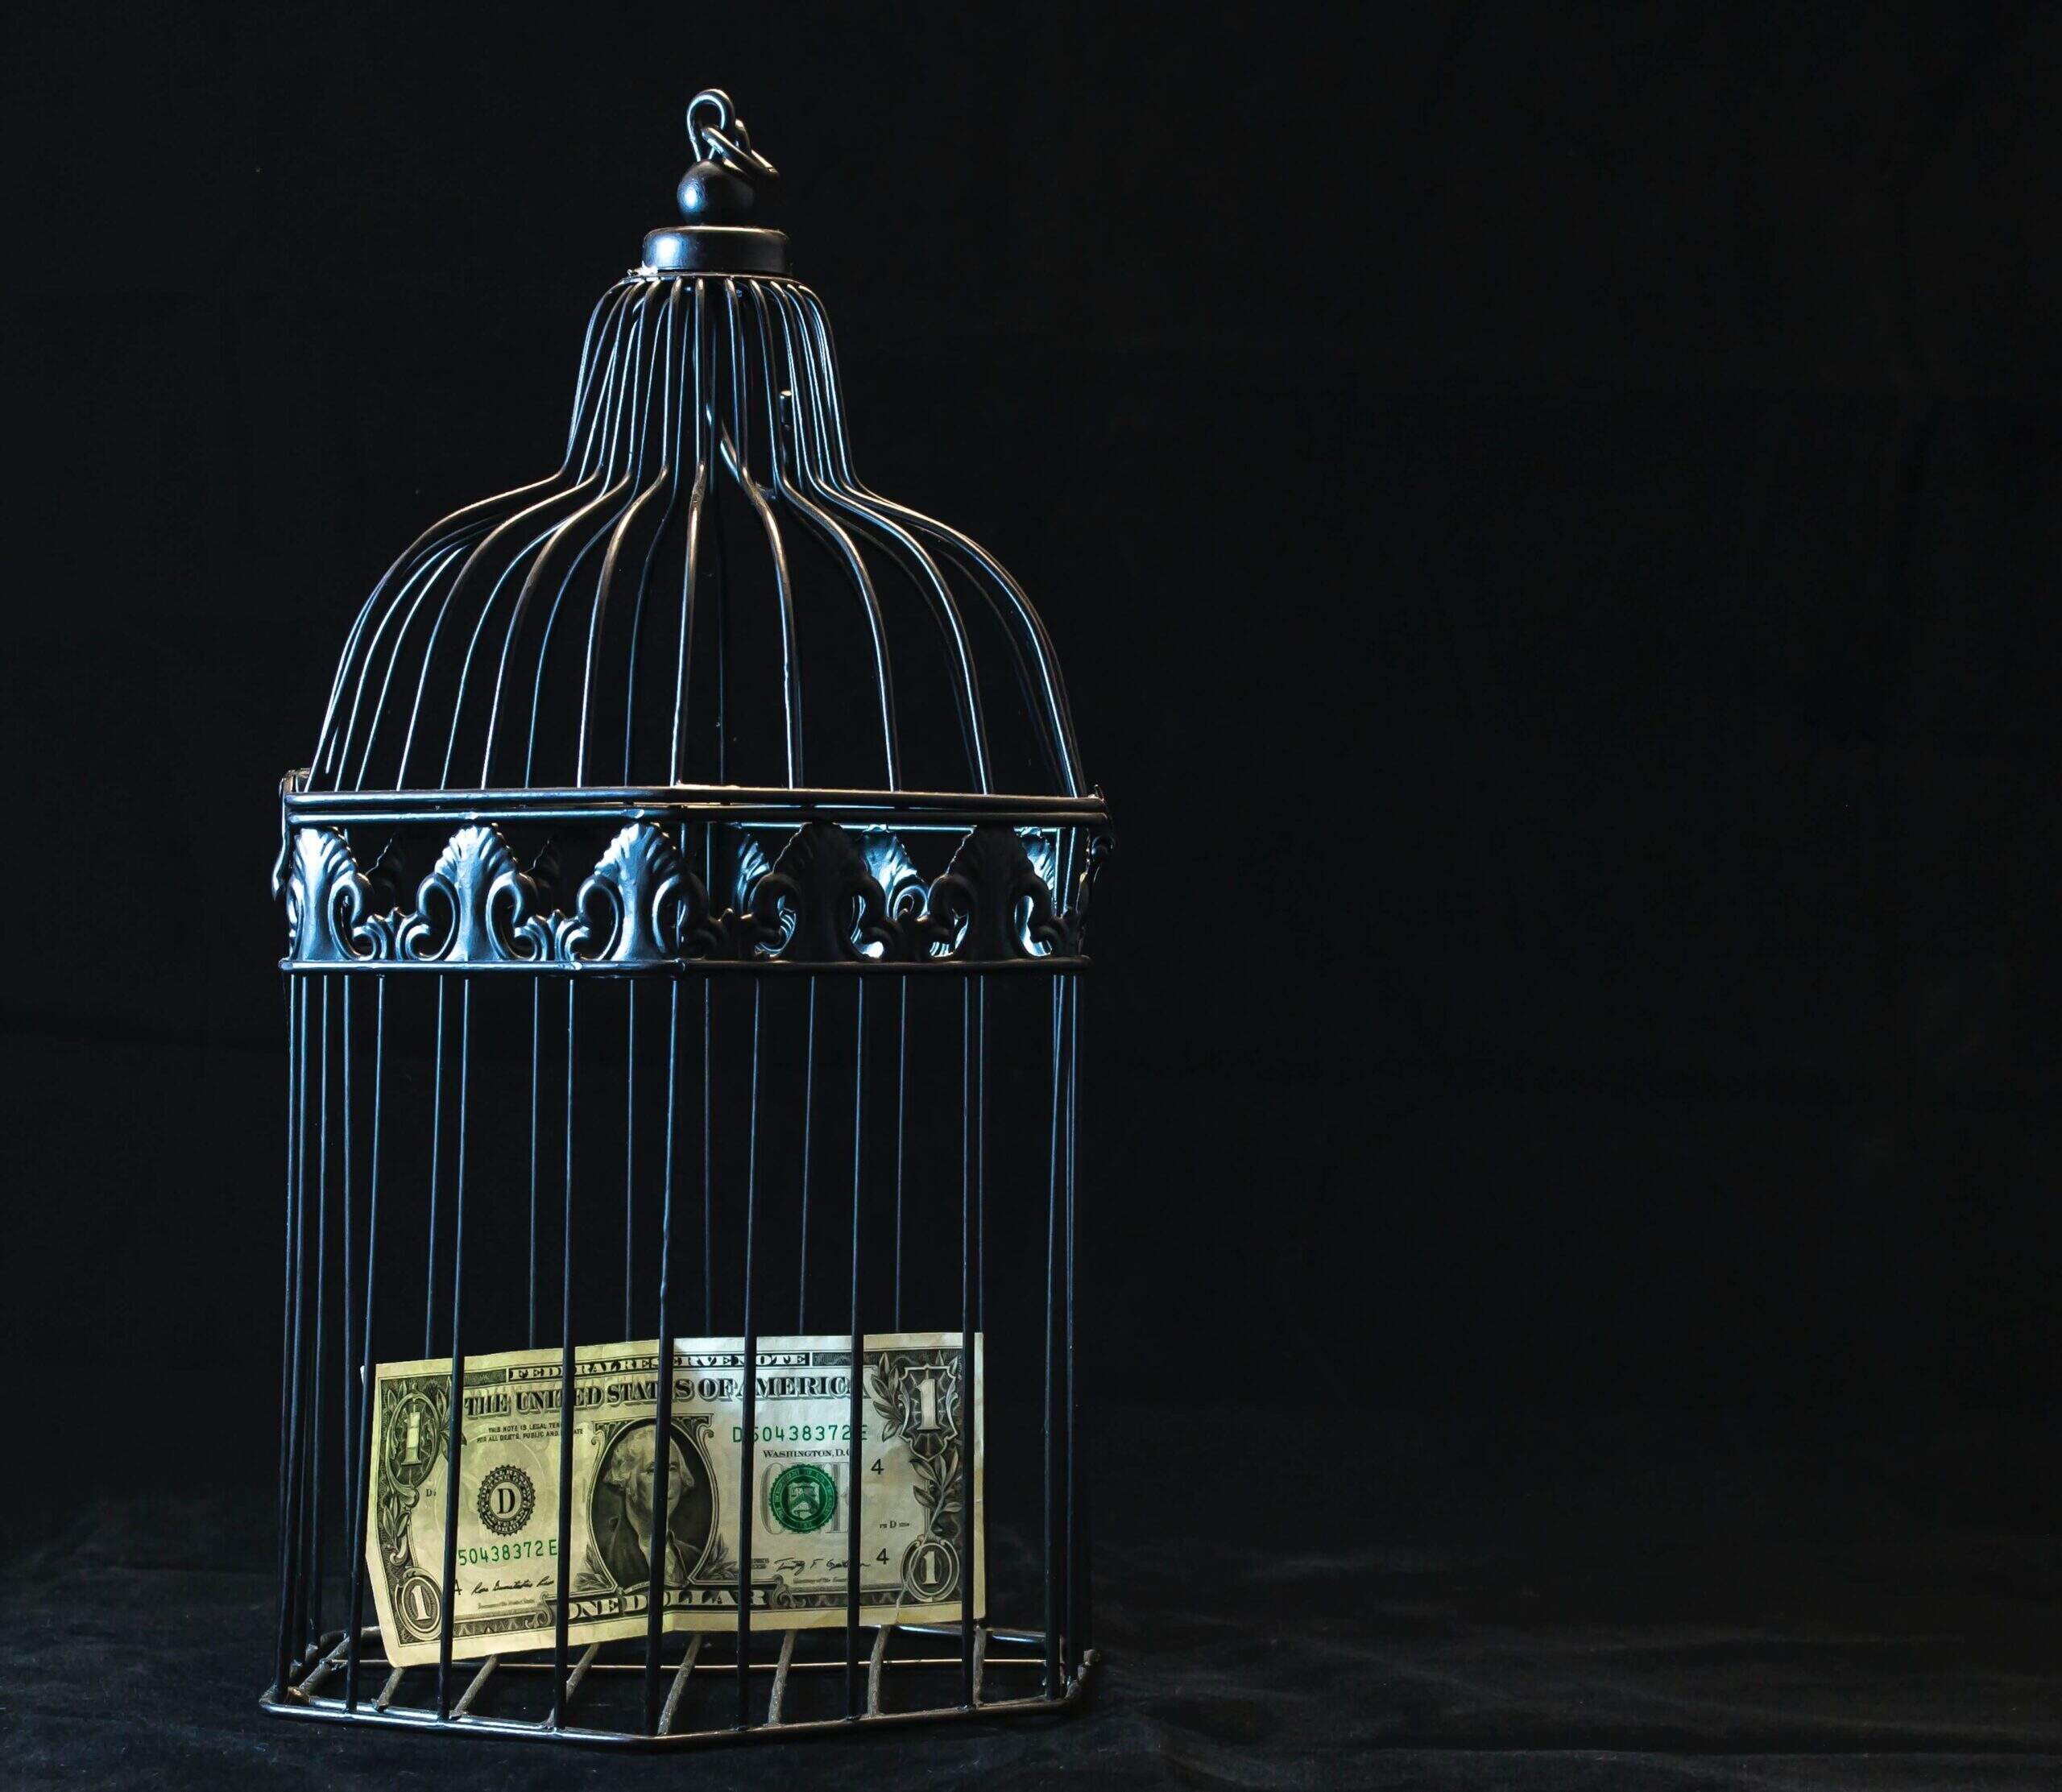 Dinheiro enjaulado representando multa. | Individualização das penas - Artigo Quinto